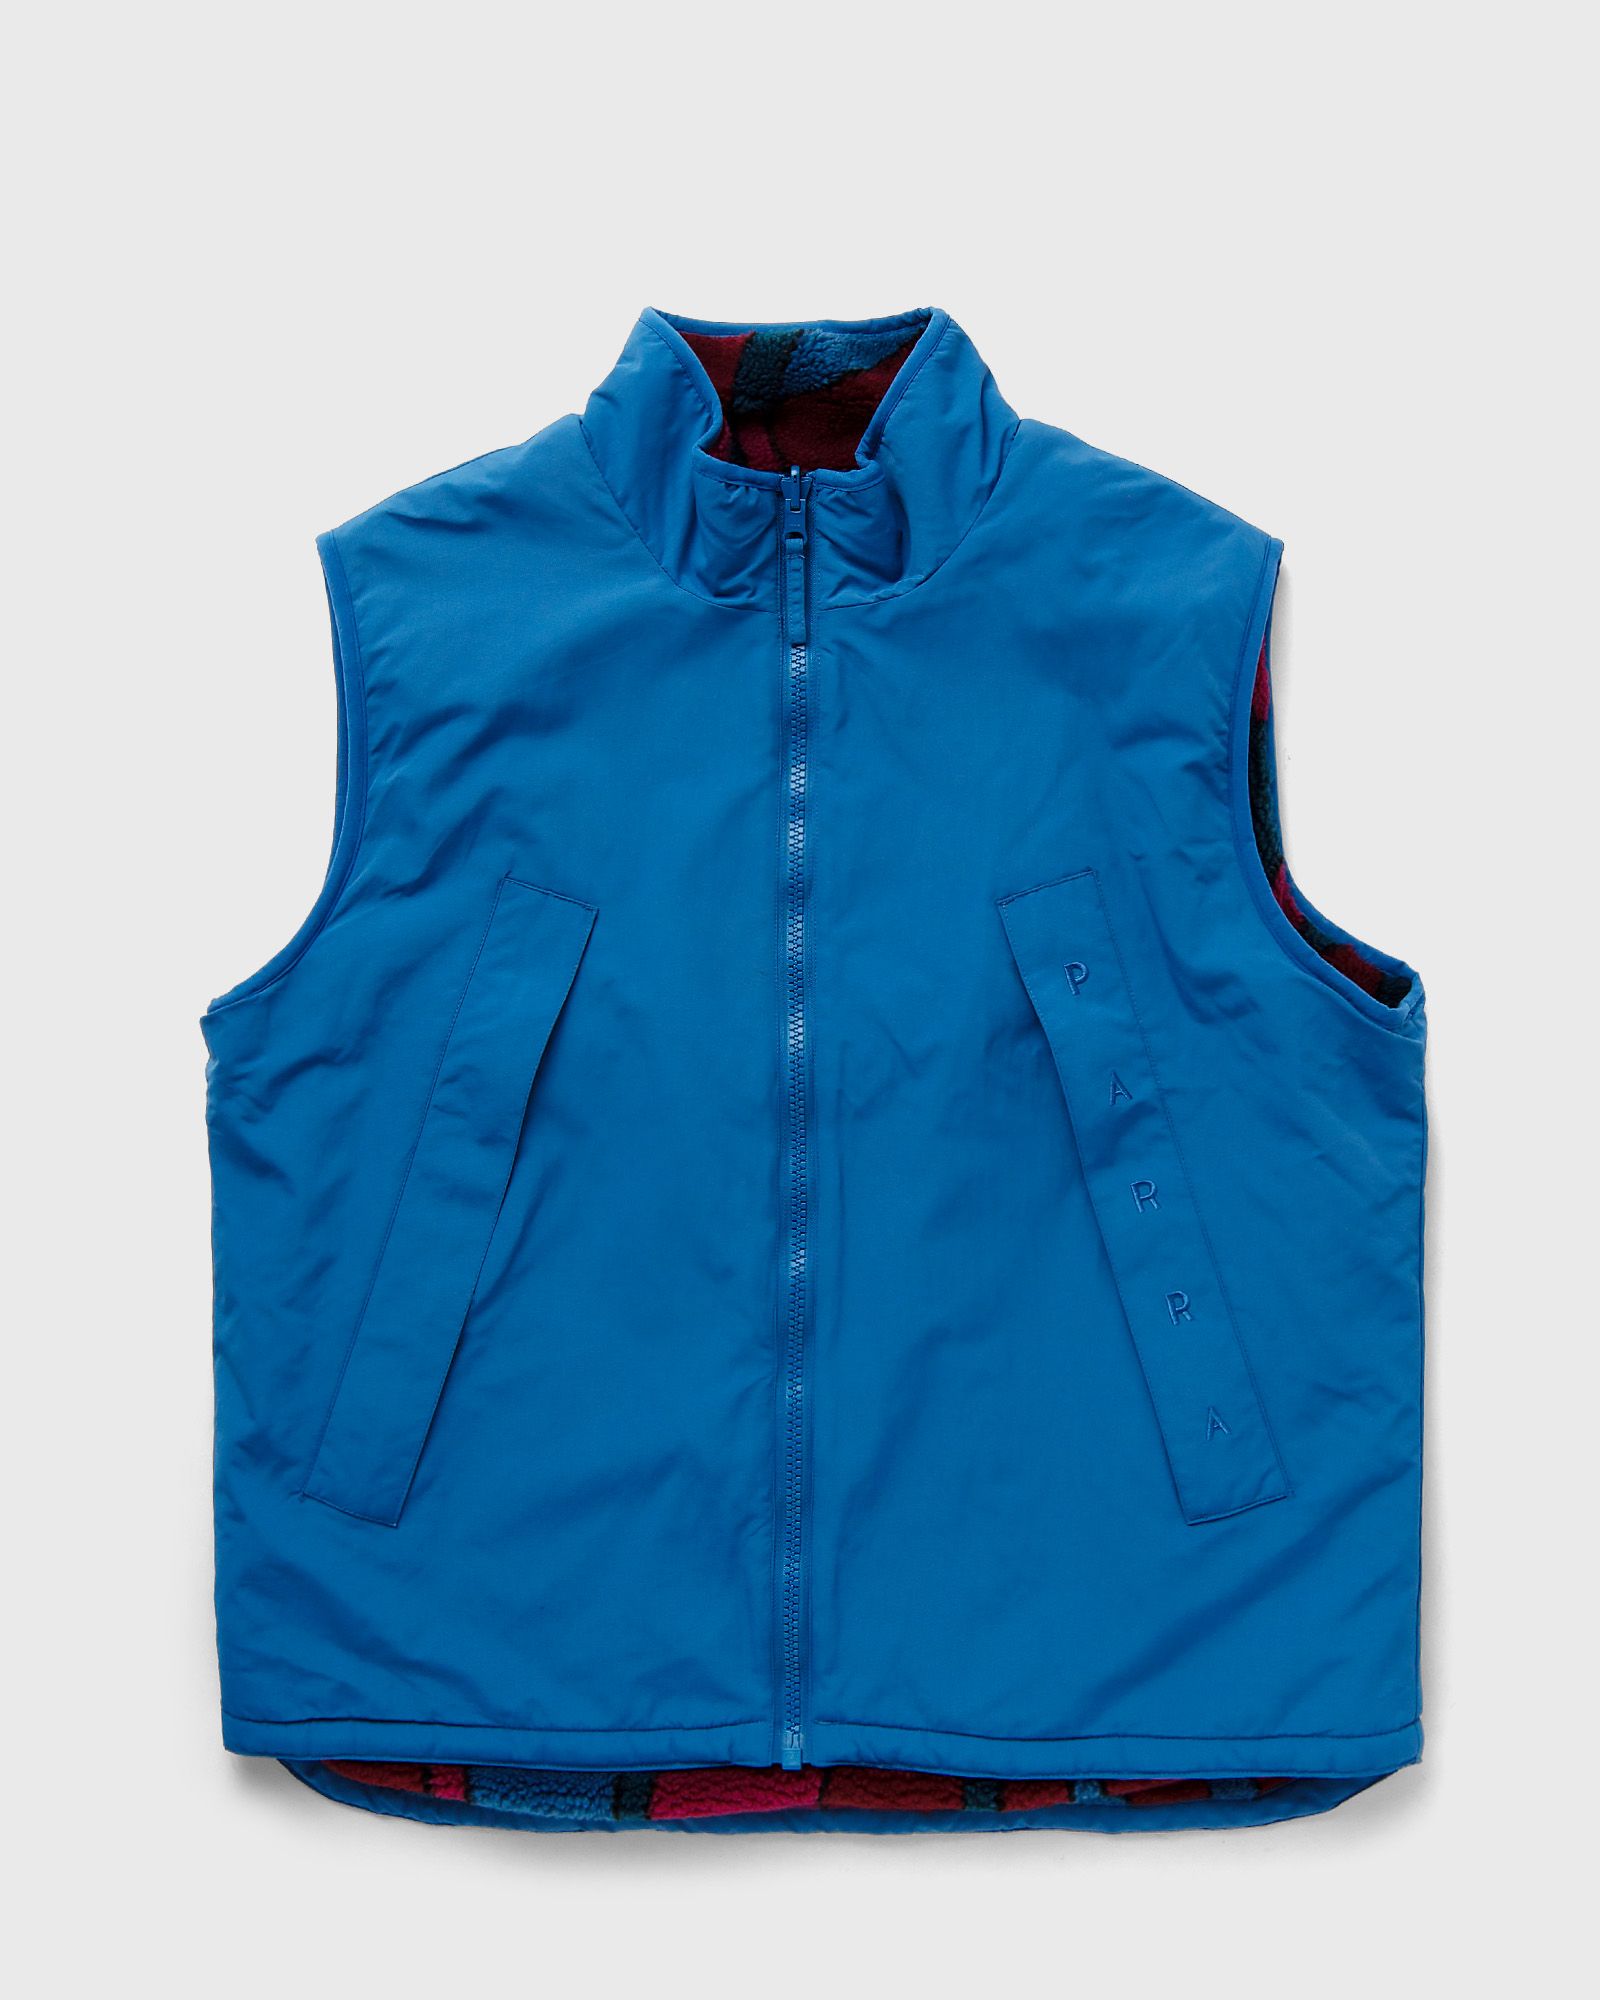 By Parra - trees in wind reversible vest men vests blue in größe:xl